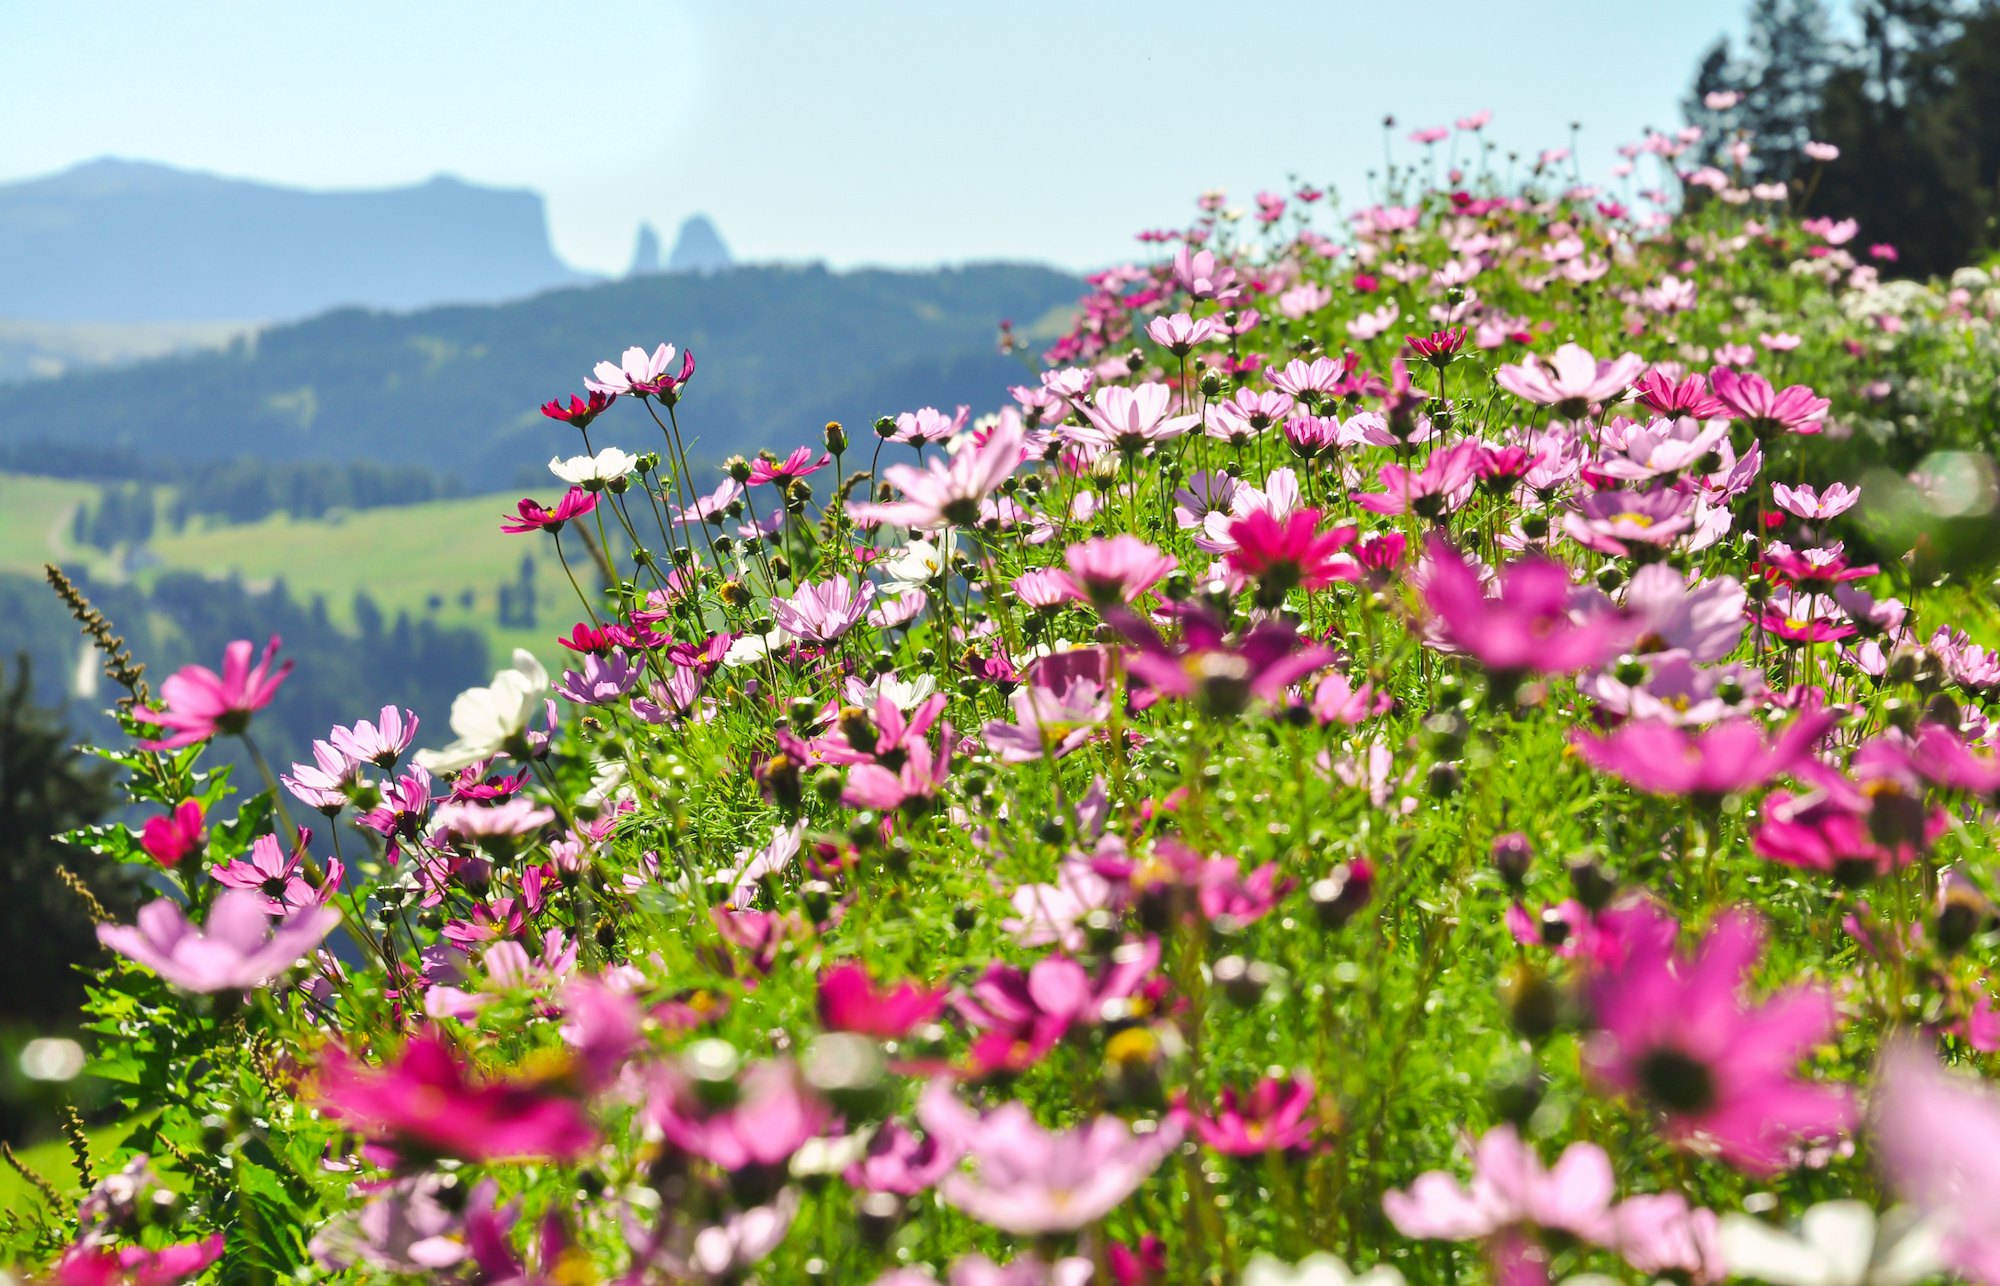 Les plus beaux champs de fleurs dans le monde. © ON-Photography, Adobe Stock